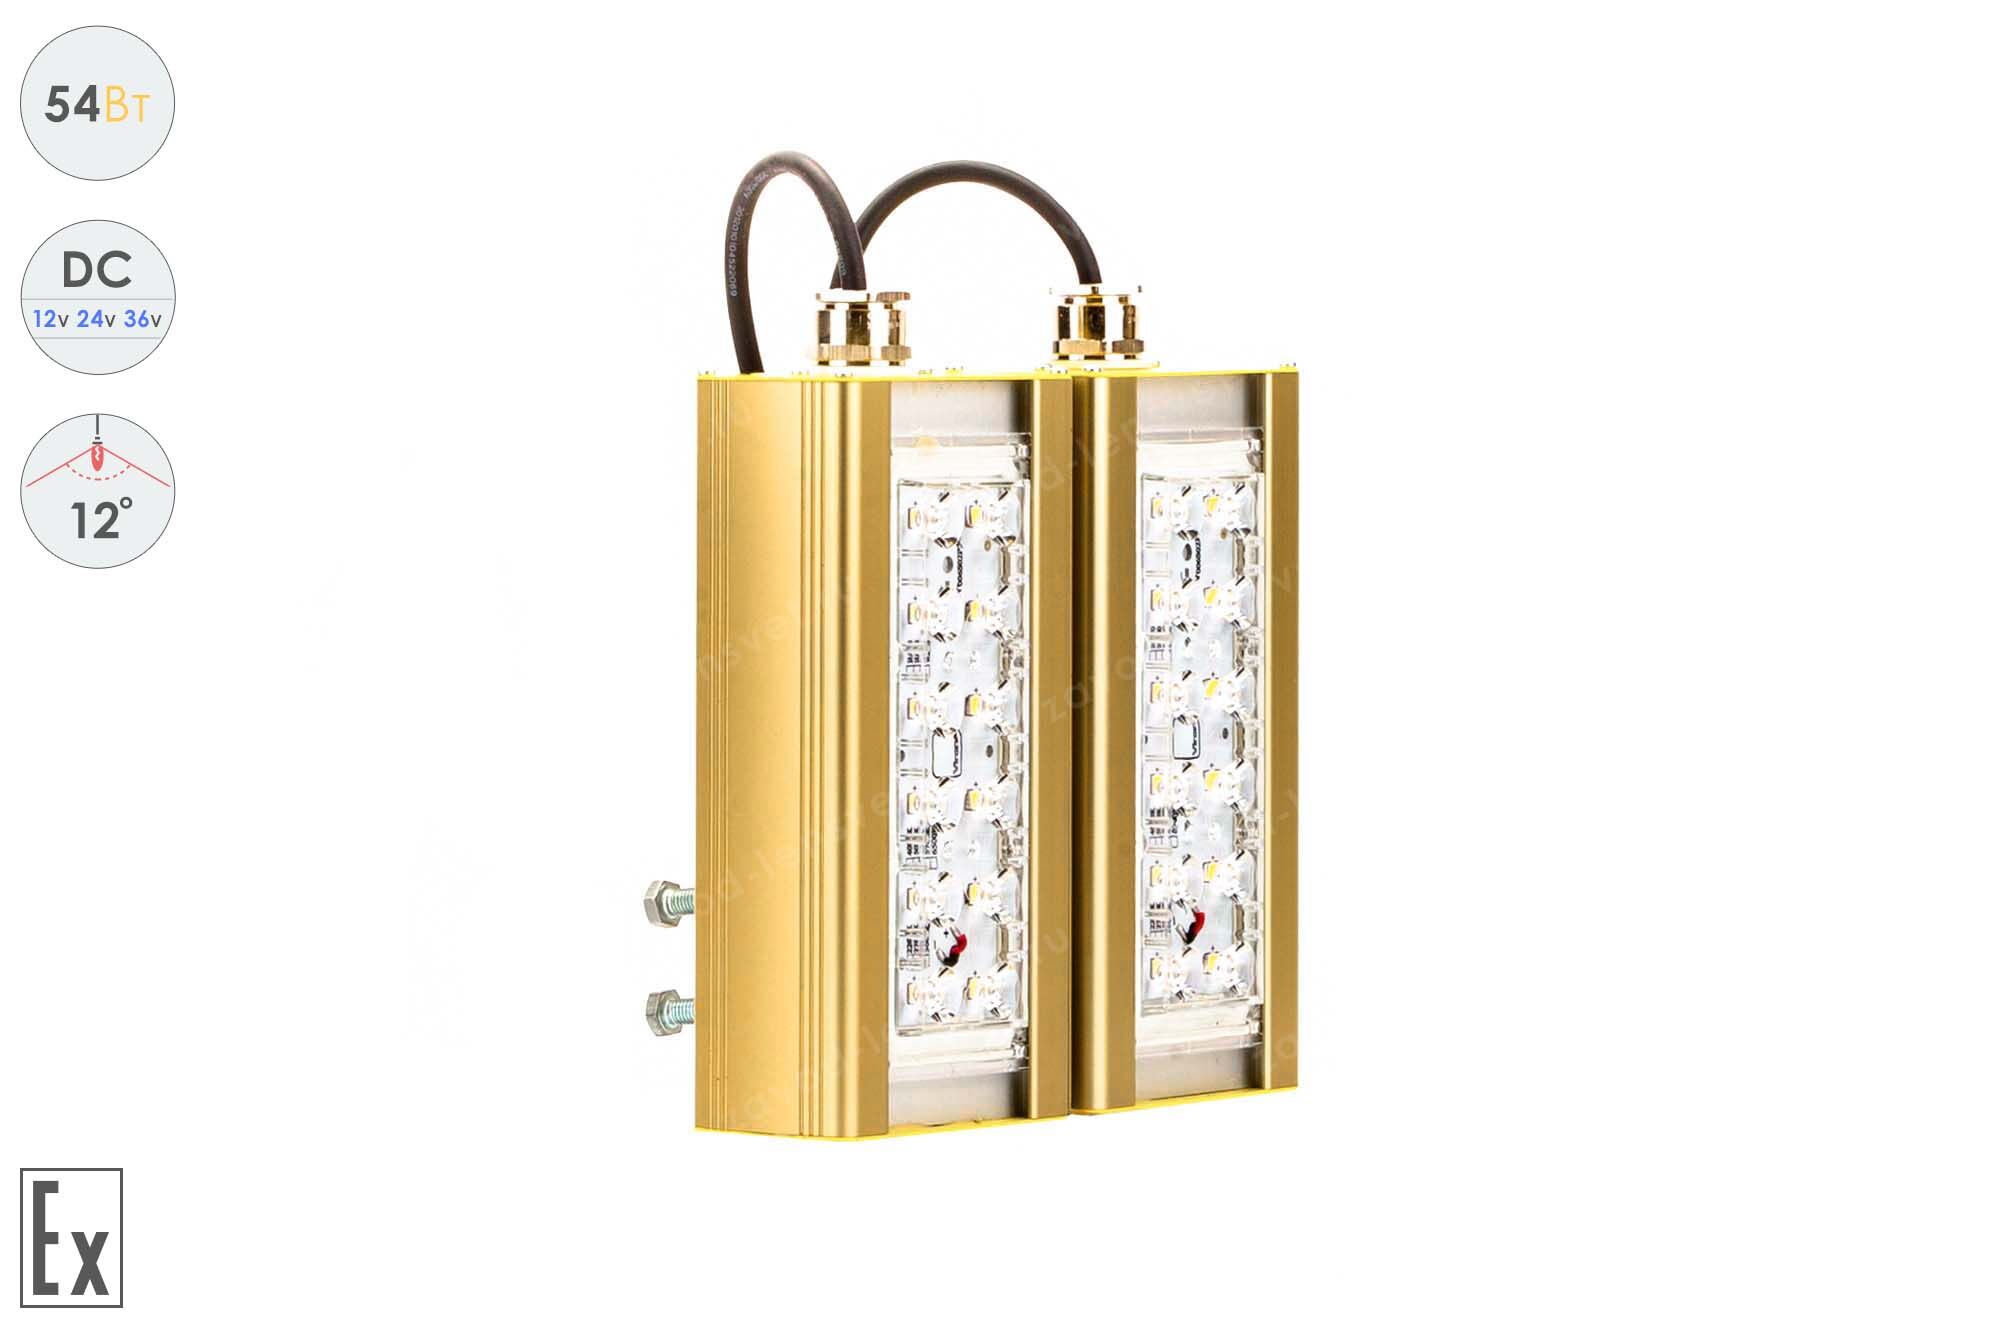 Светодиодный светильник Низковольтный Прожектор Взрывозащищенный GOLD, консоль K-2, 54 Вт, 12°